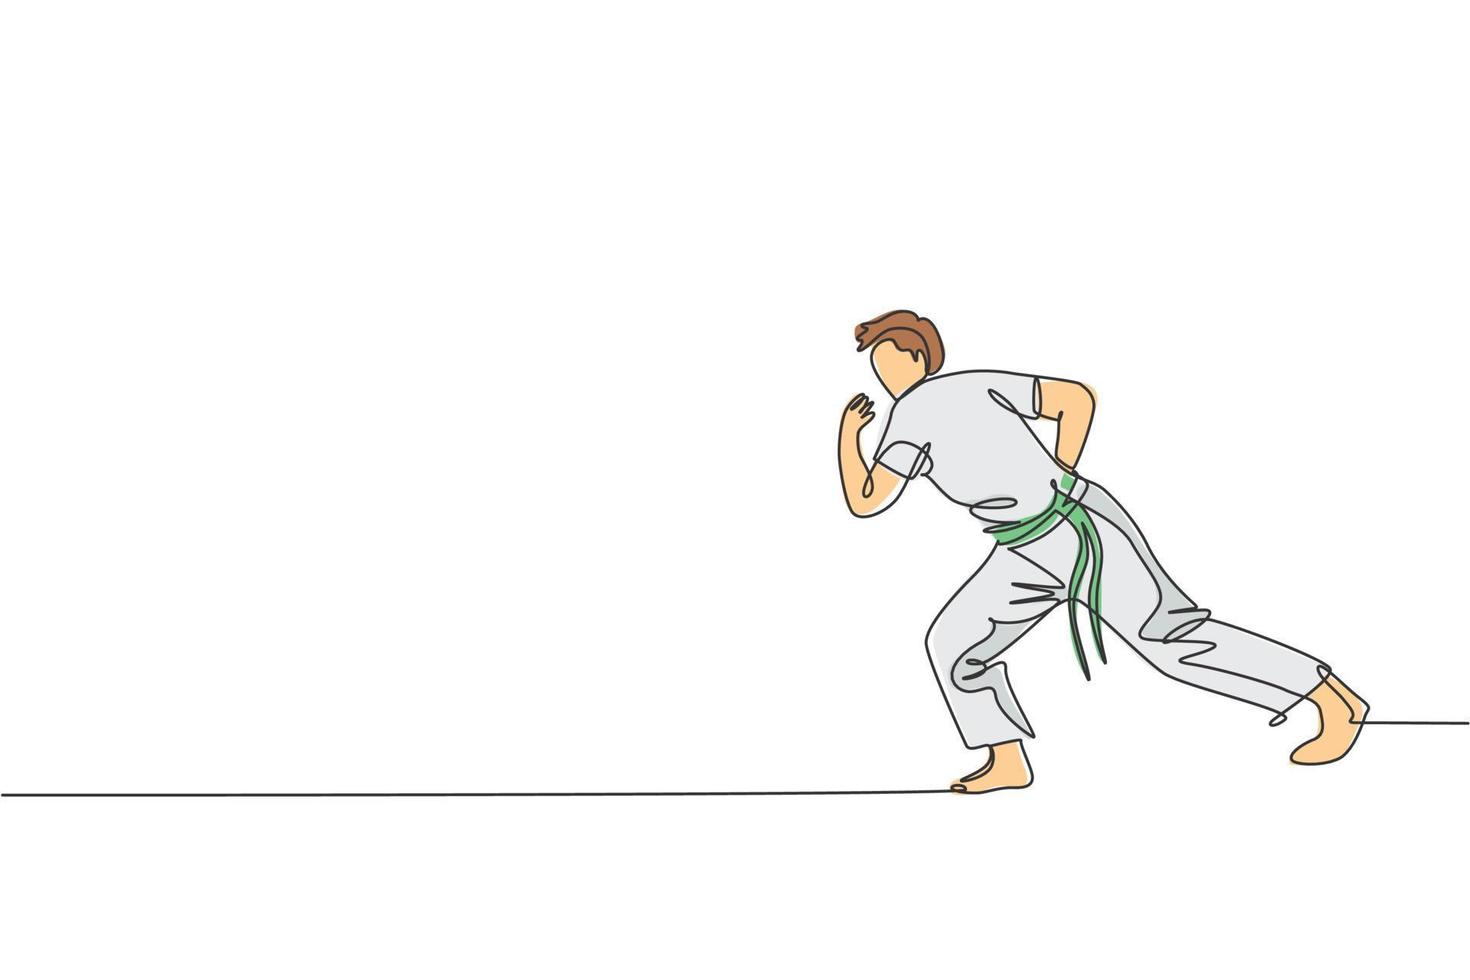 en kontinuerlig linjeteckning av ung sportig brasiliansk fighter man som tränar capoeira på stranden. hälsosam traditionell kampsport koncept. dynamisk enda rad rita design vektorillustration vektor